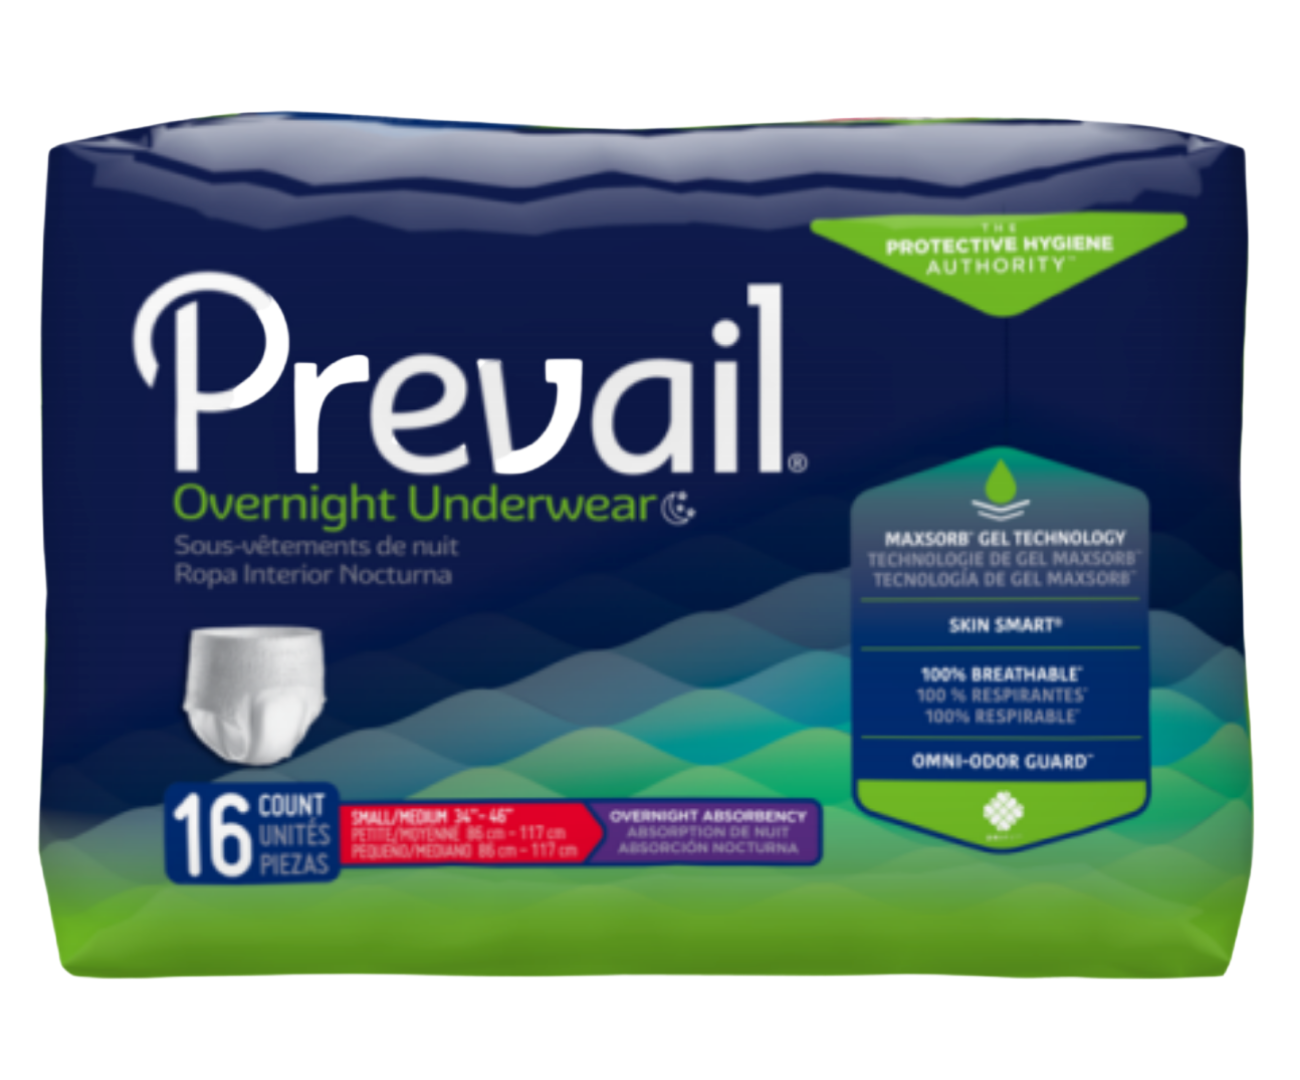 Prevail Overnight Underwear